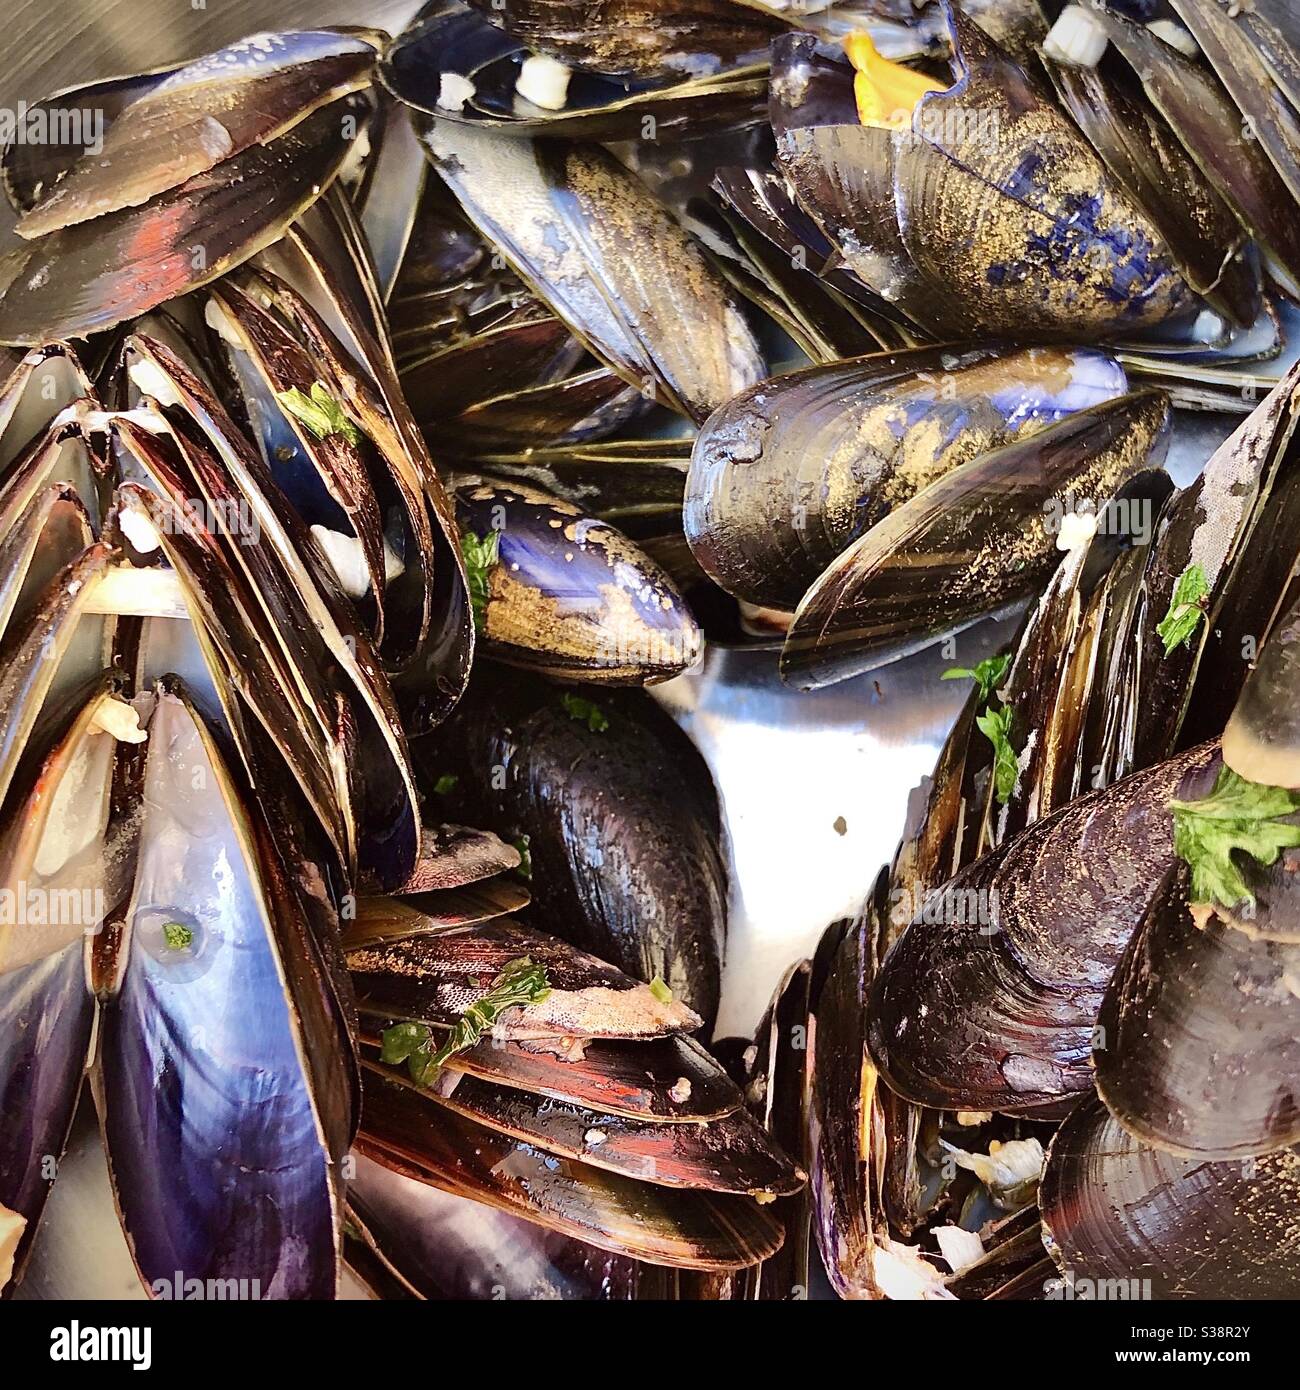 Leere ‘moules marinières’ Muscheln auf dem Speiseteller im französischen Restaurant zusammengeschichtet. Stockfoto